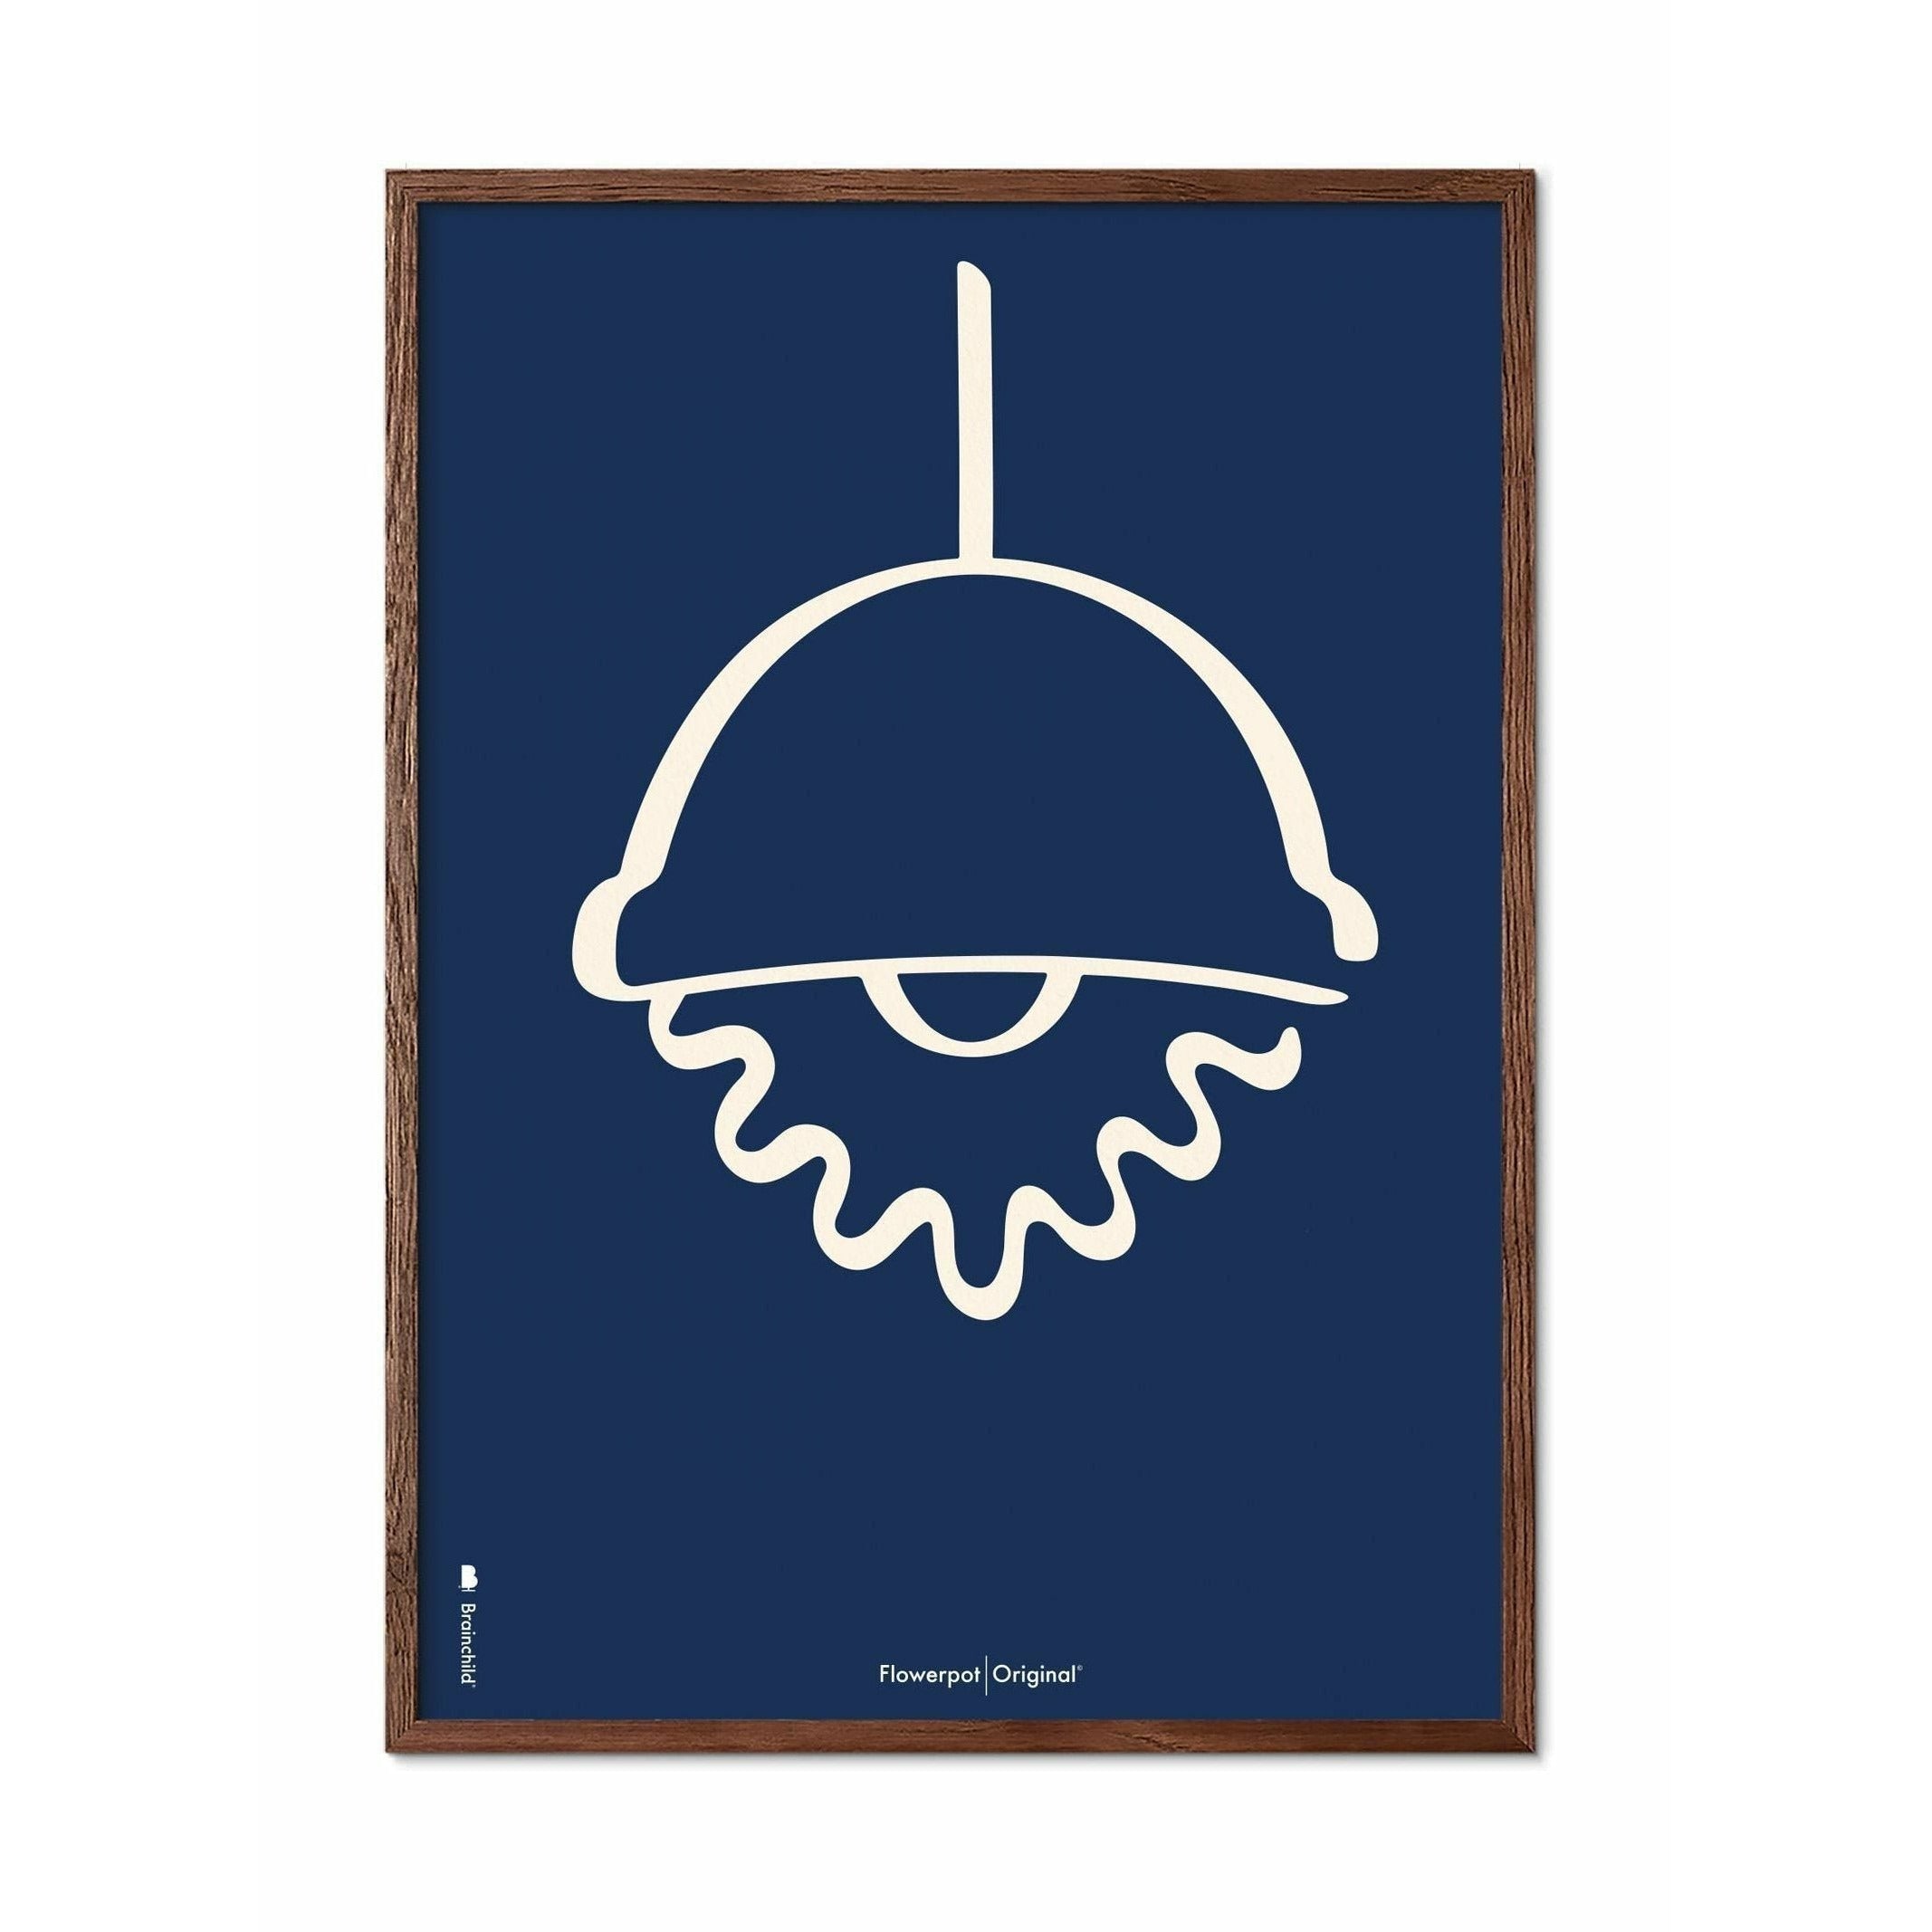 Brainchild Flowerpot Line Poster, Dark Wood Frame 70 X100 Cm, Blue Background